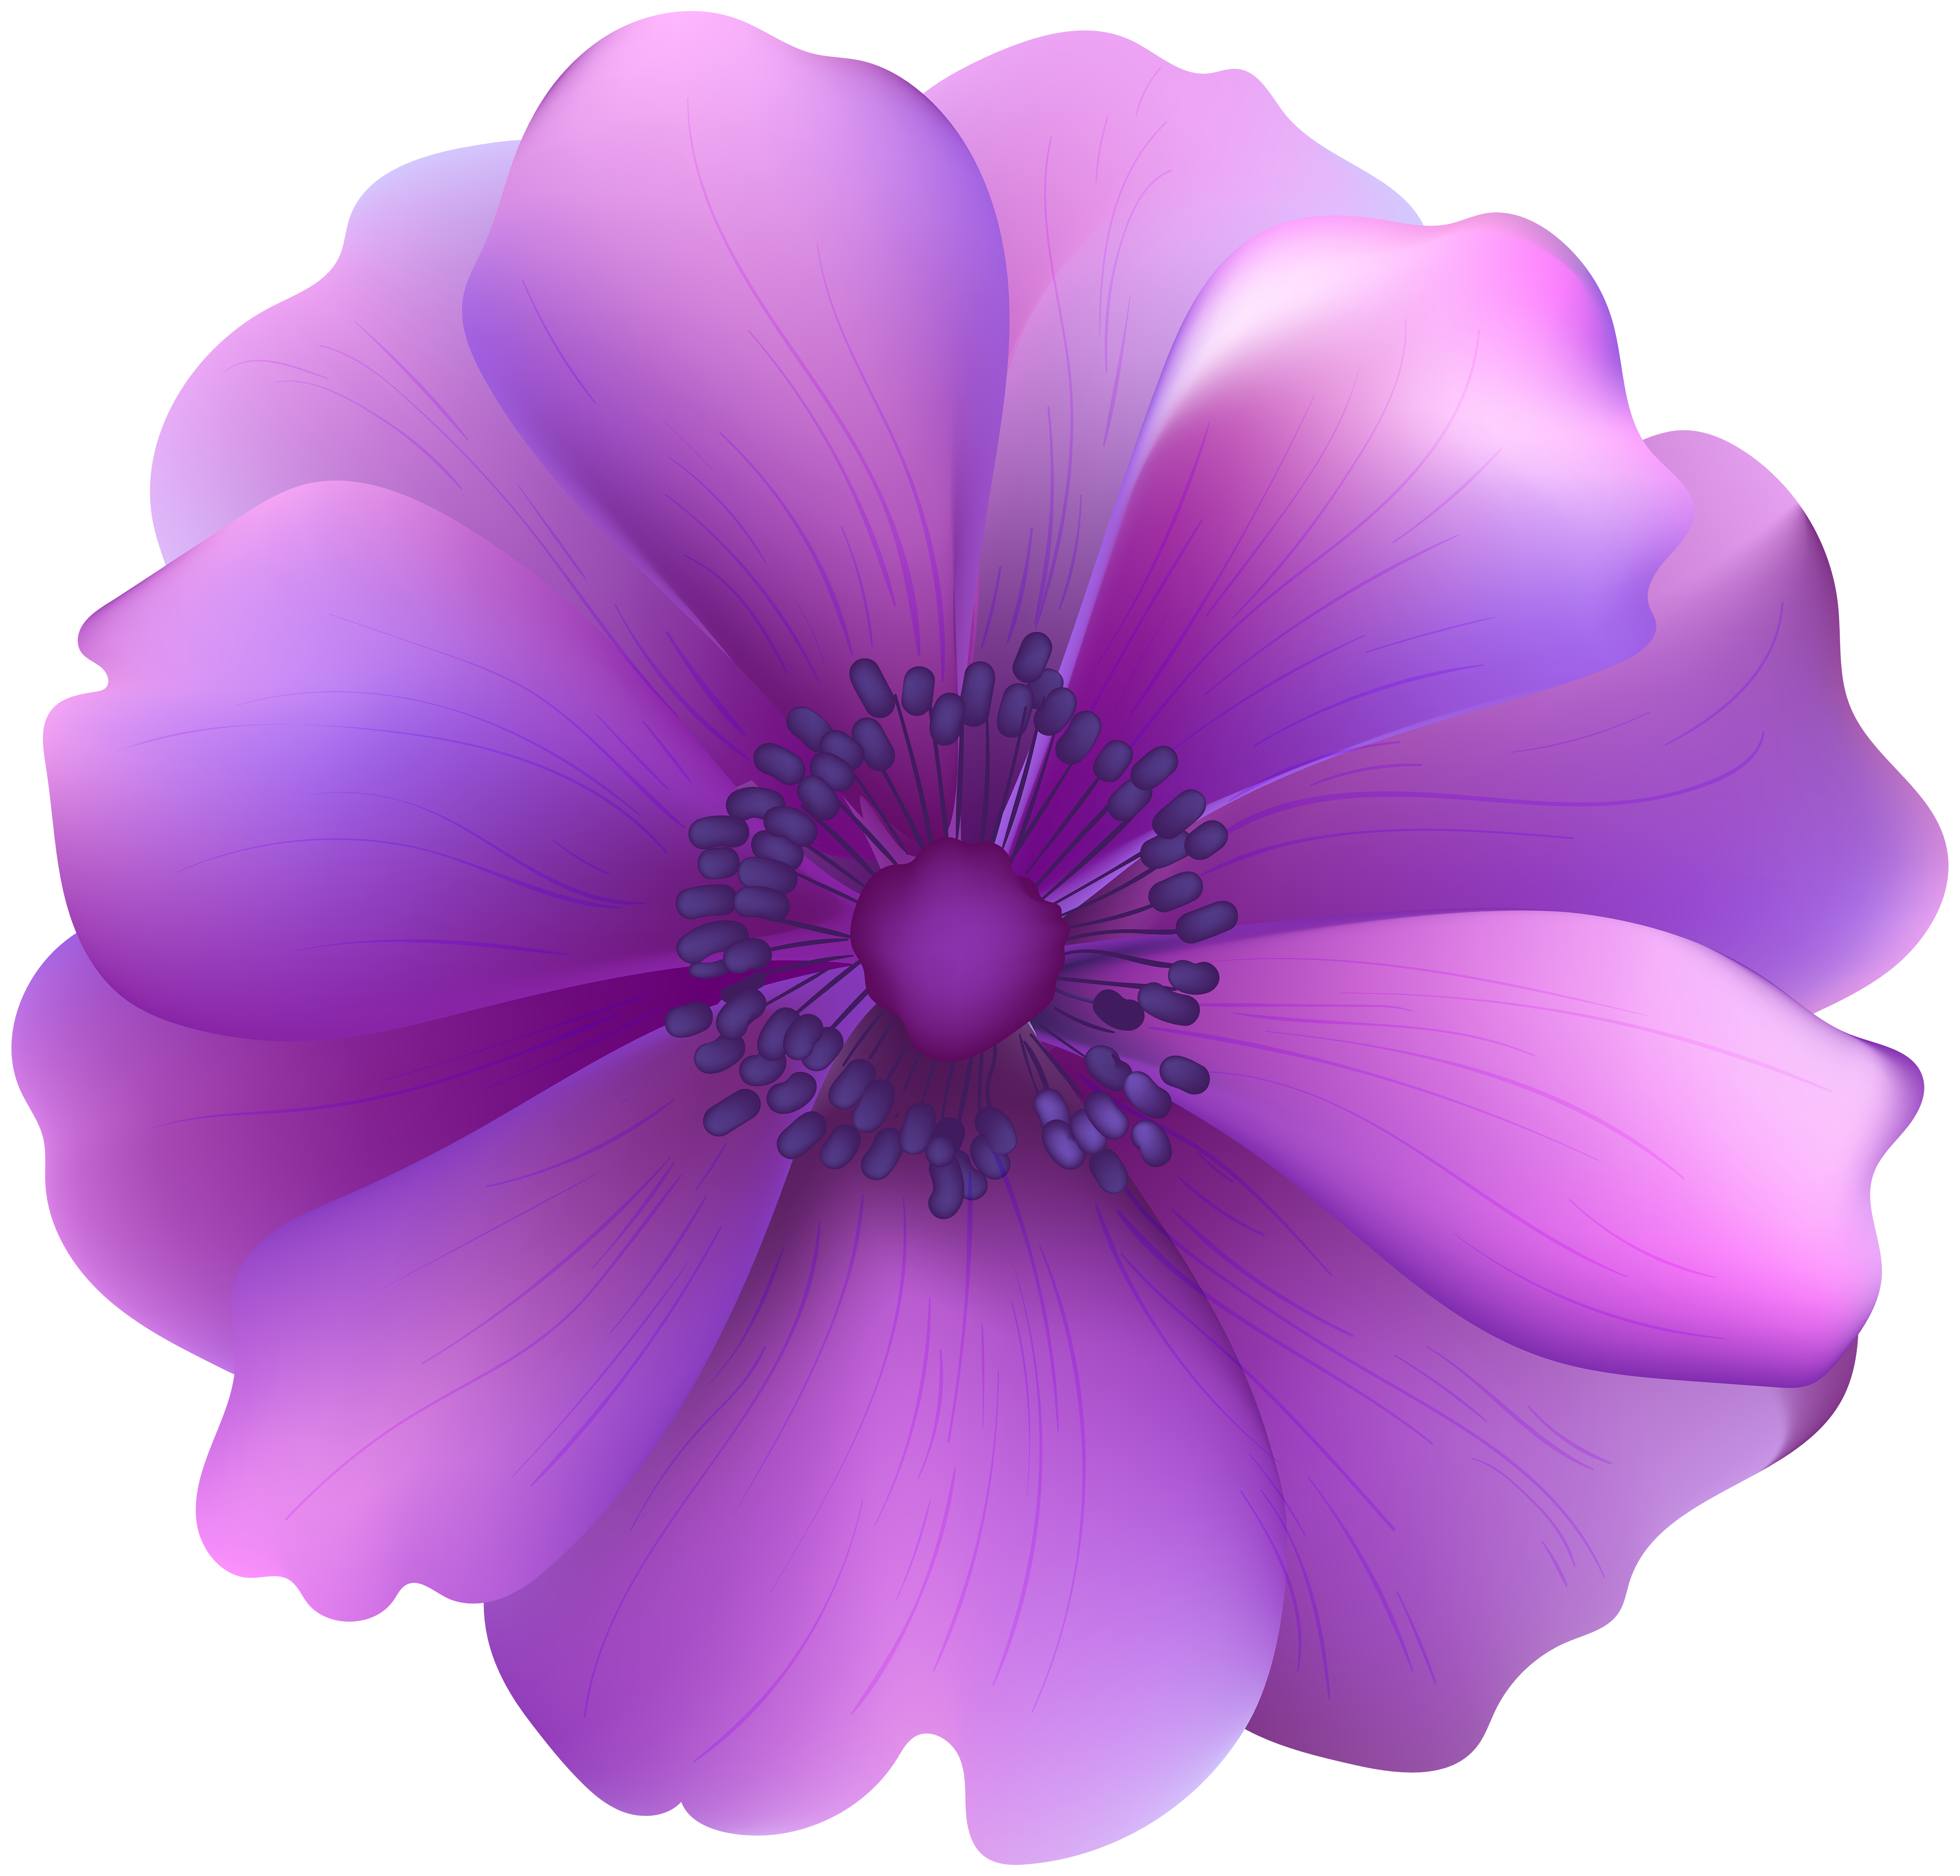 Nghệ thuật clip hoa tím trong suốt khiến cho bộ sưu tập này trở thành một tác phẩm nghệ thuật đích thực. Nếu bạn yêu thích sự kiện, trang trí hay chỉ đơn giản là thích màu hoa tím, hãy khám phá những hình ảnh đẹp này.